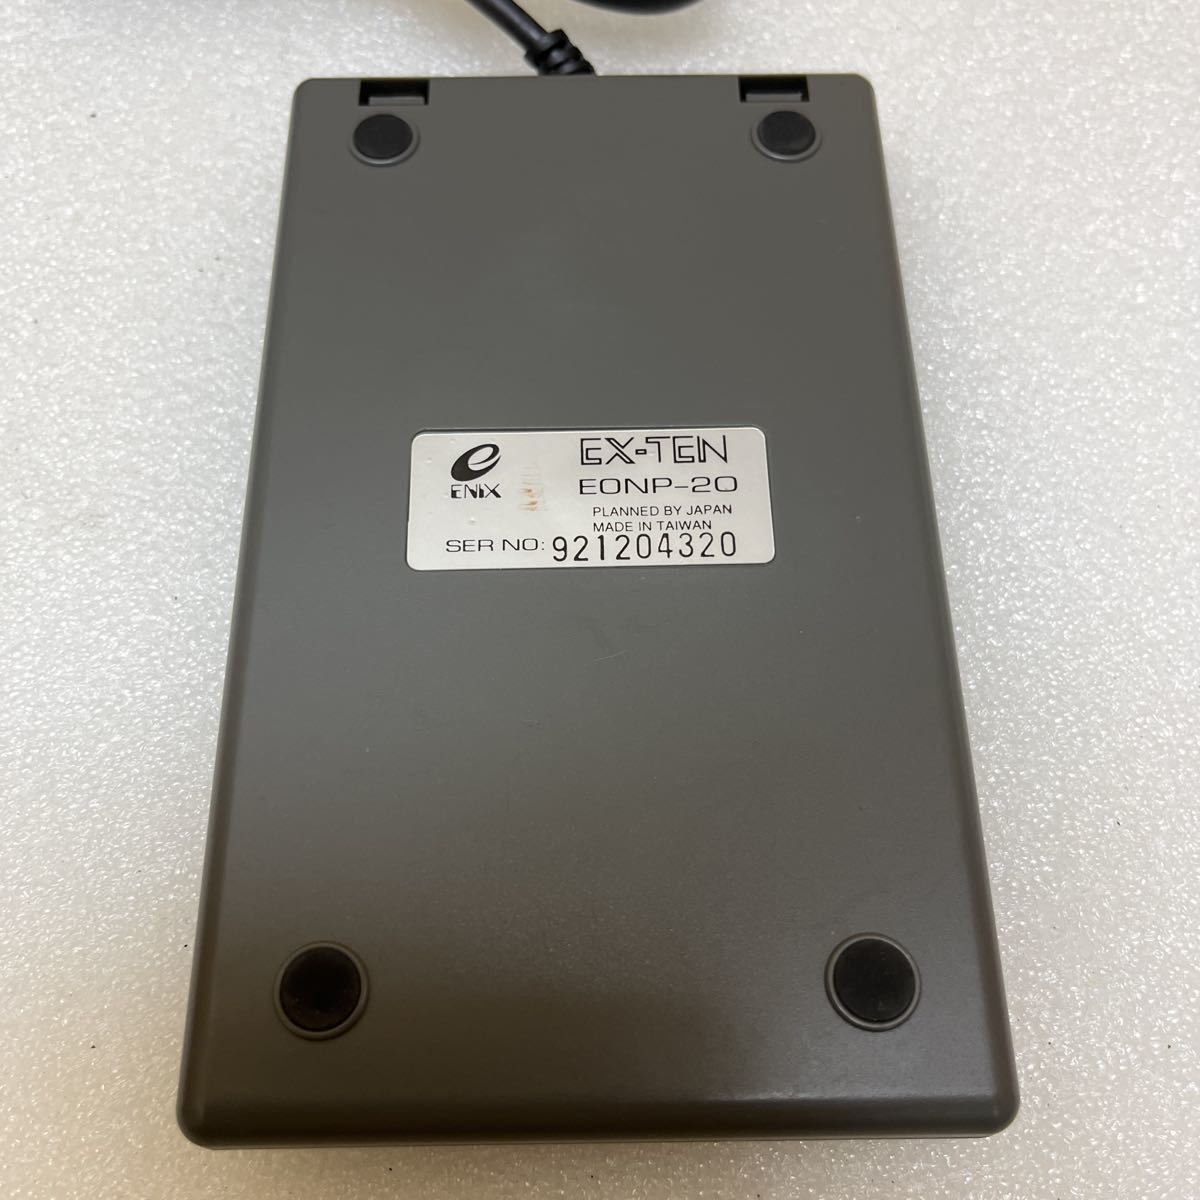 YK4986 редкий ENIX enix старый Logo цифровая клавиатура EX-TEN EONP-20 PC-9801 серии соответствует работоспособность не проверялась текущее состояние товар 0720